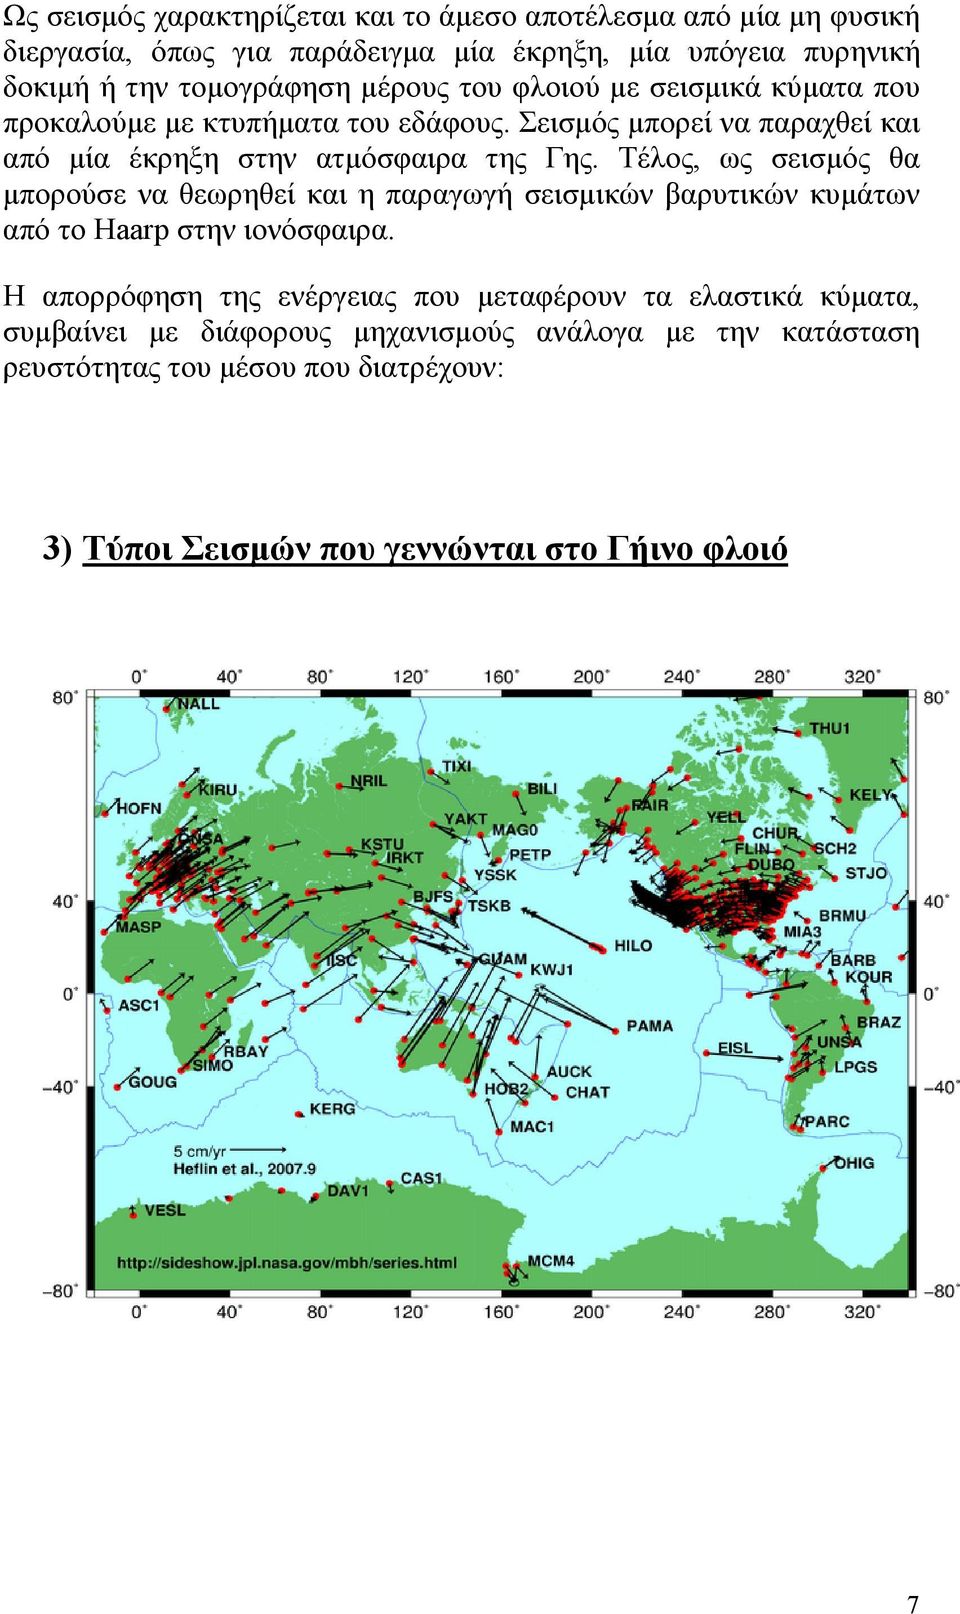 Τέλος, ως σεισμός θα μπορούσε να θεωρηθεί και η παραγωγή σεισμικών βαρυτικών κυμάτων από το Haarp στην ιονόσφαιρα.